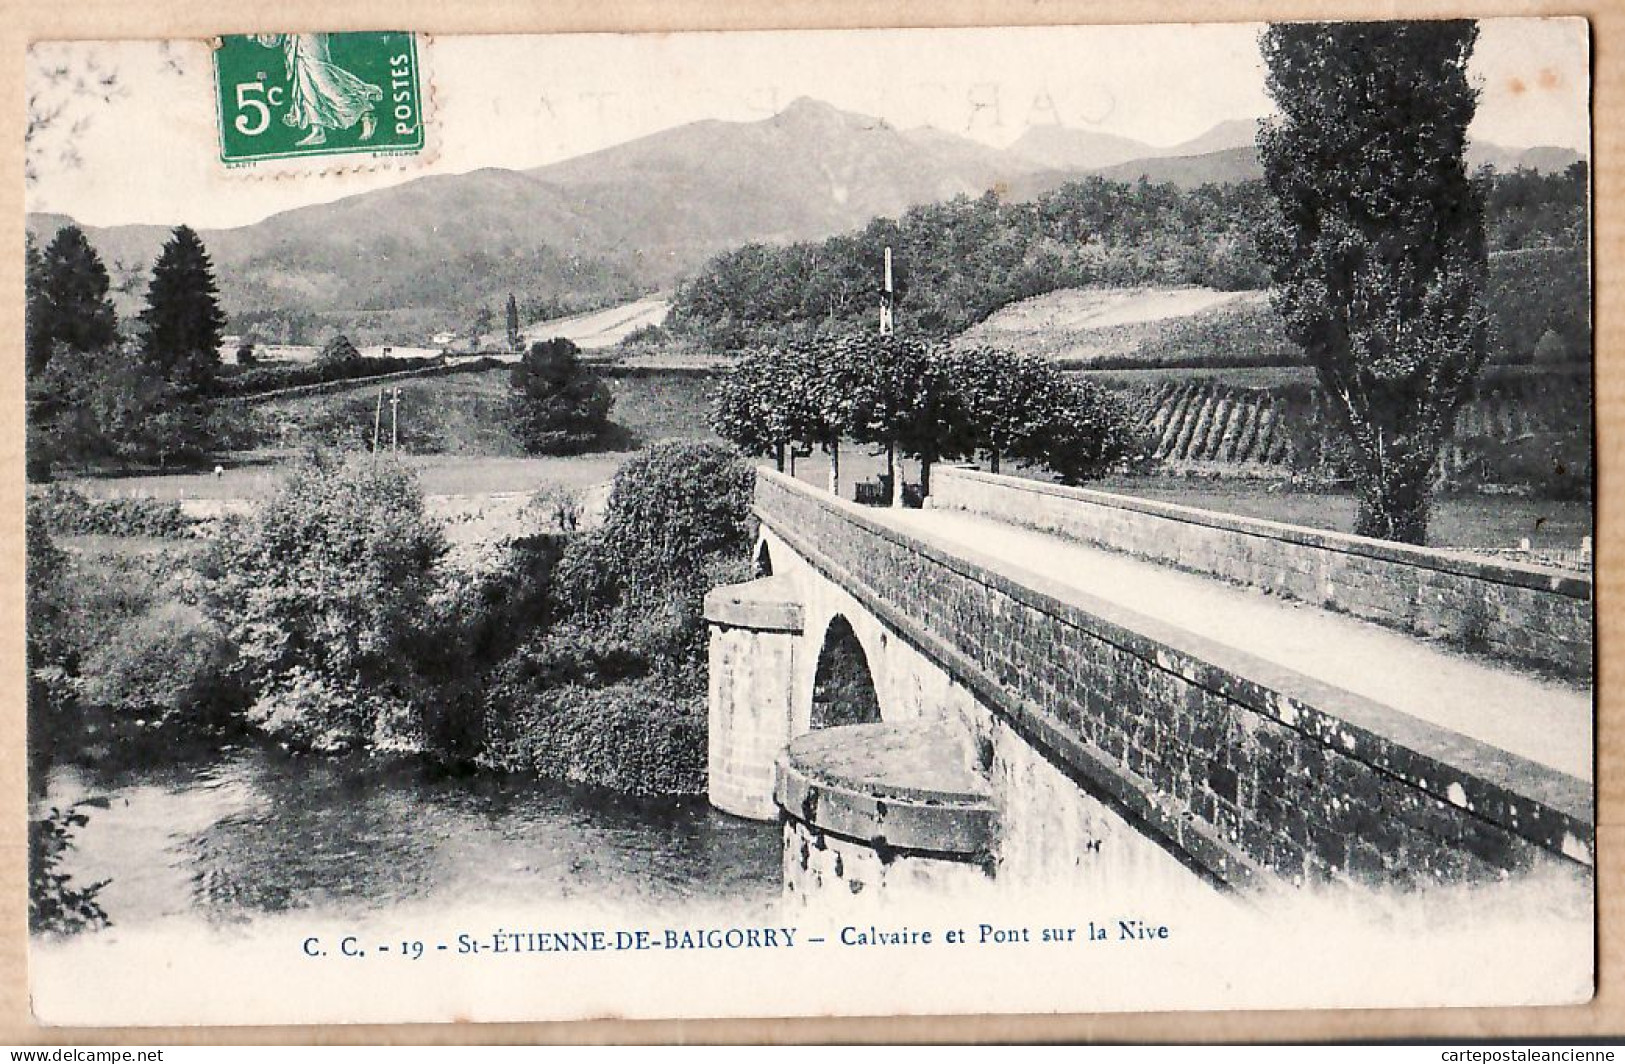 15367 ● SAINT-ETIENNE-de-BAIGORRY St Calvaire Et Pont Sur La NIVE Village Euskadi Pays Basque à ARTARIT Paris G.C 19 - Saint Etienne De Baigorry